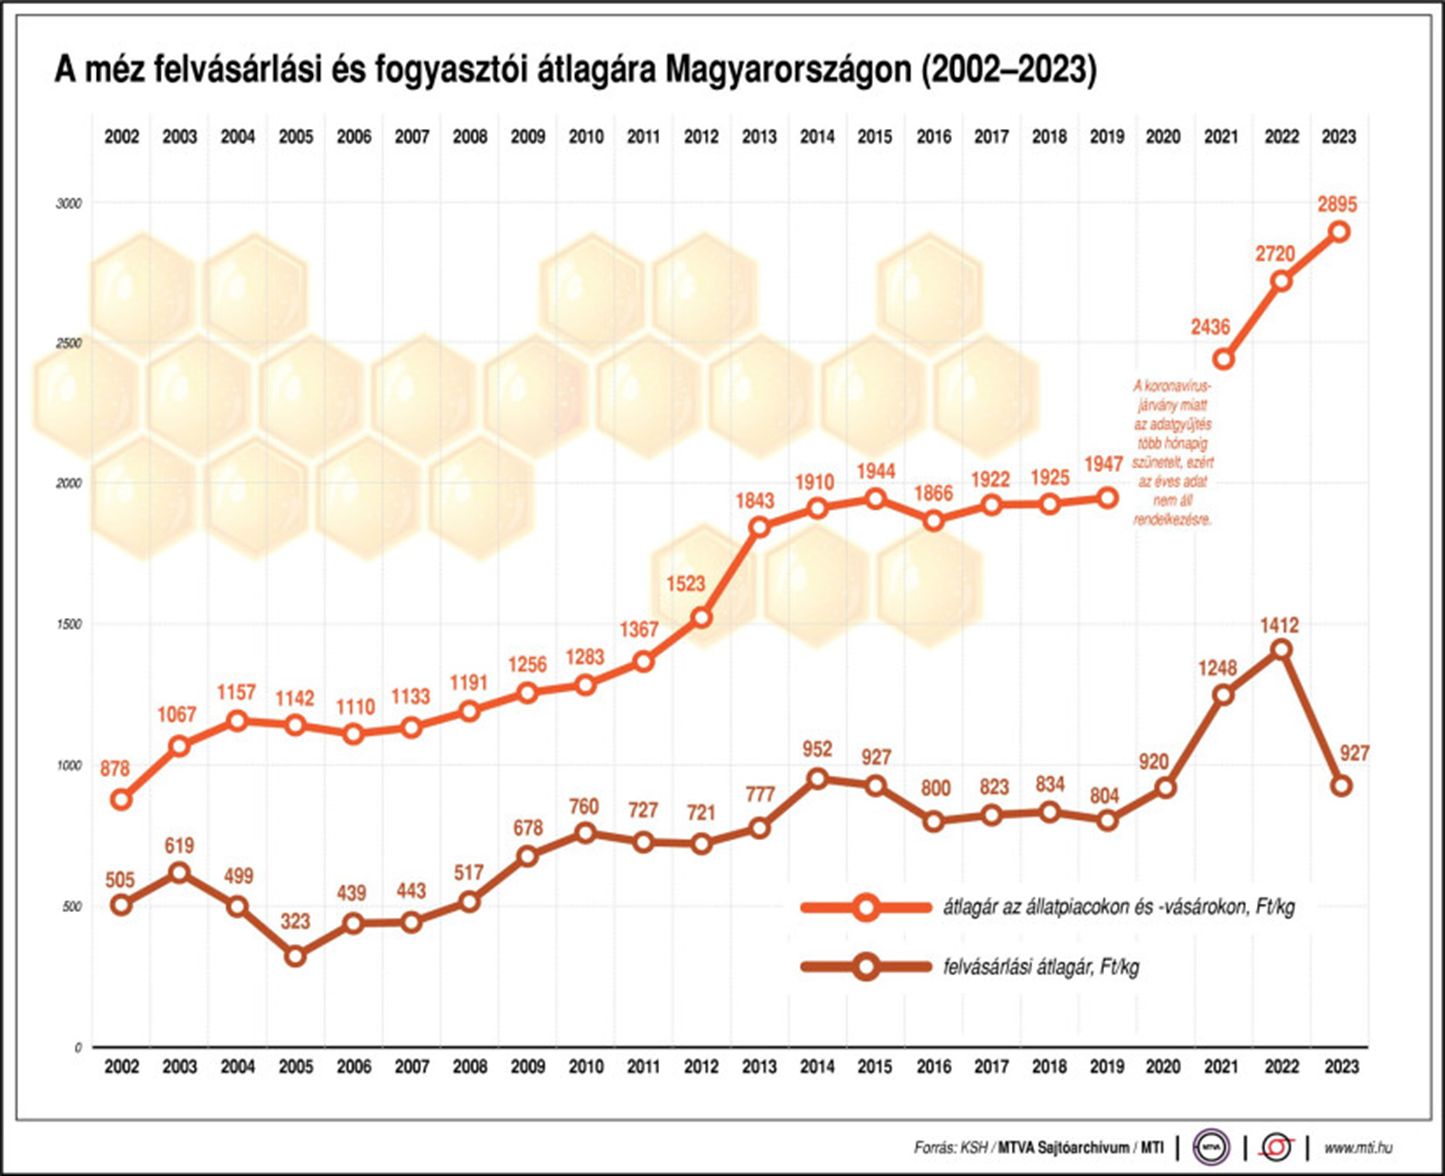 A méz felvásárlási és fogyasztói átlagára Magyarországon (2002-2023)